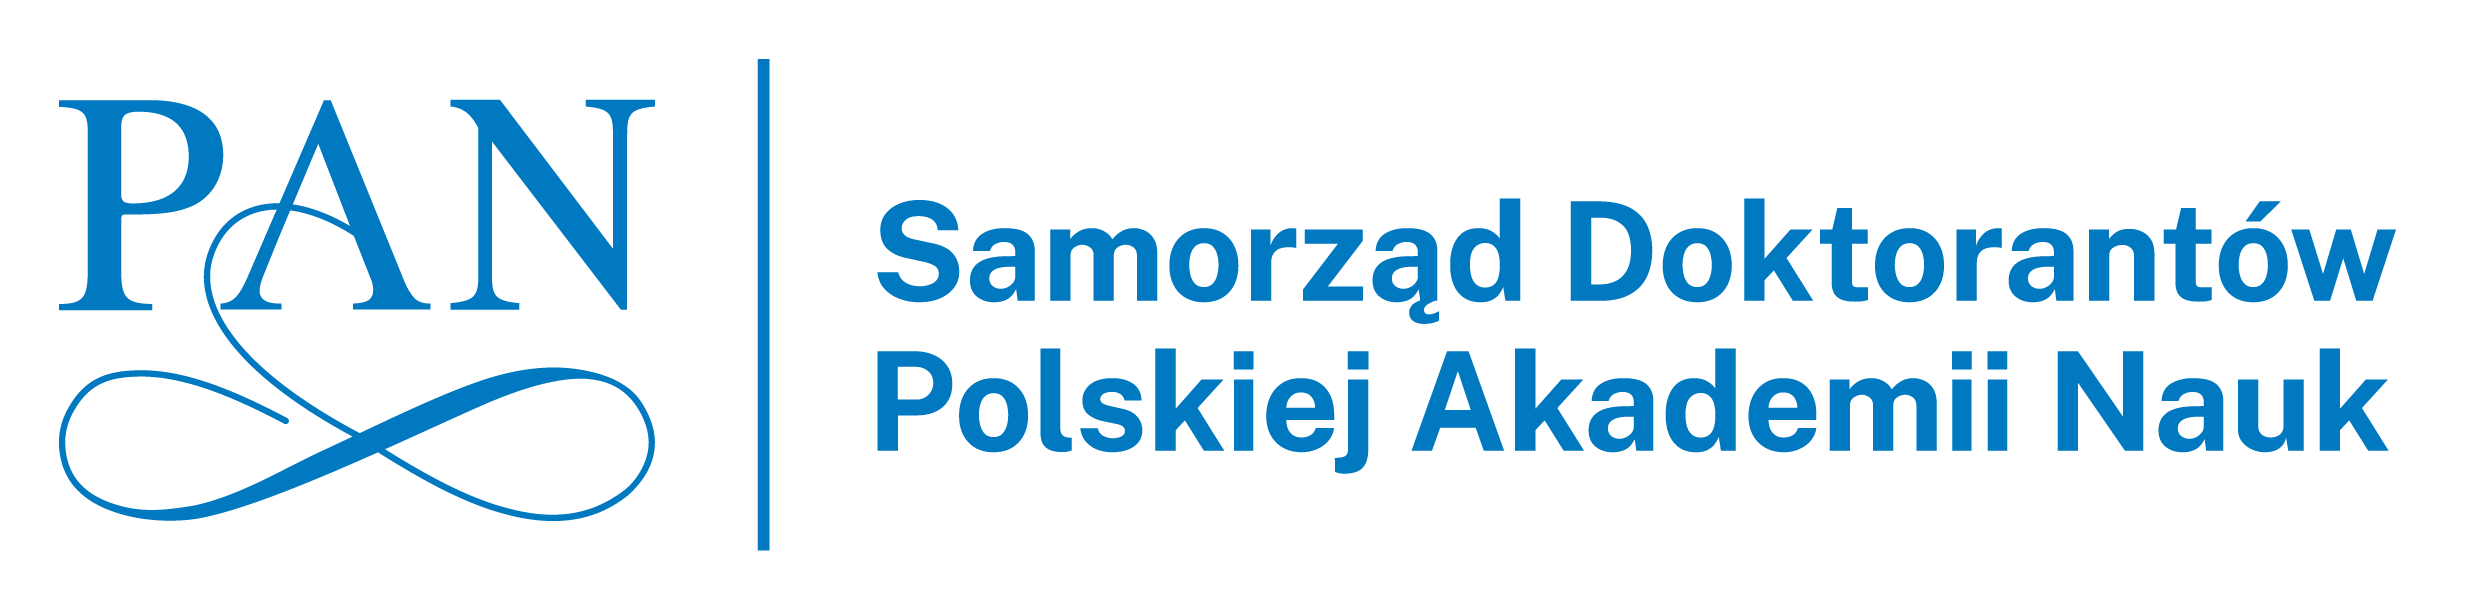 Rada Samorządu Doktorantów Polskiej Akademii Nauk